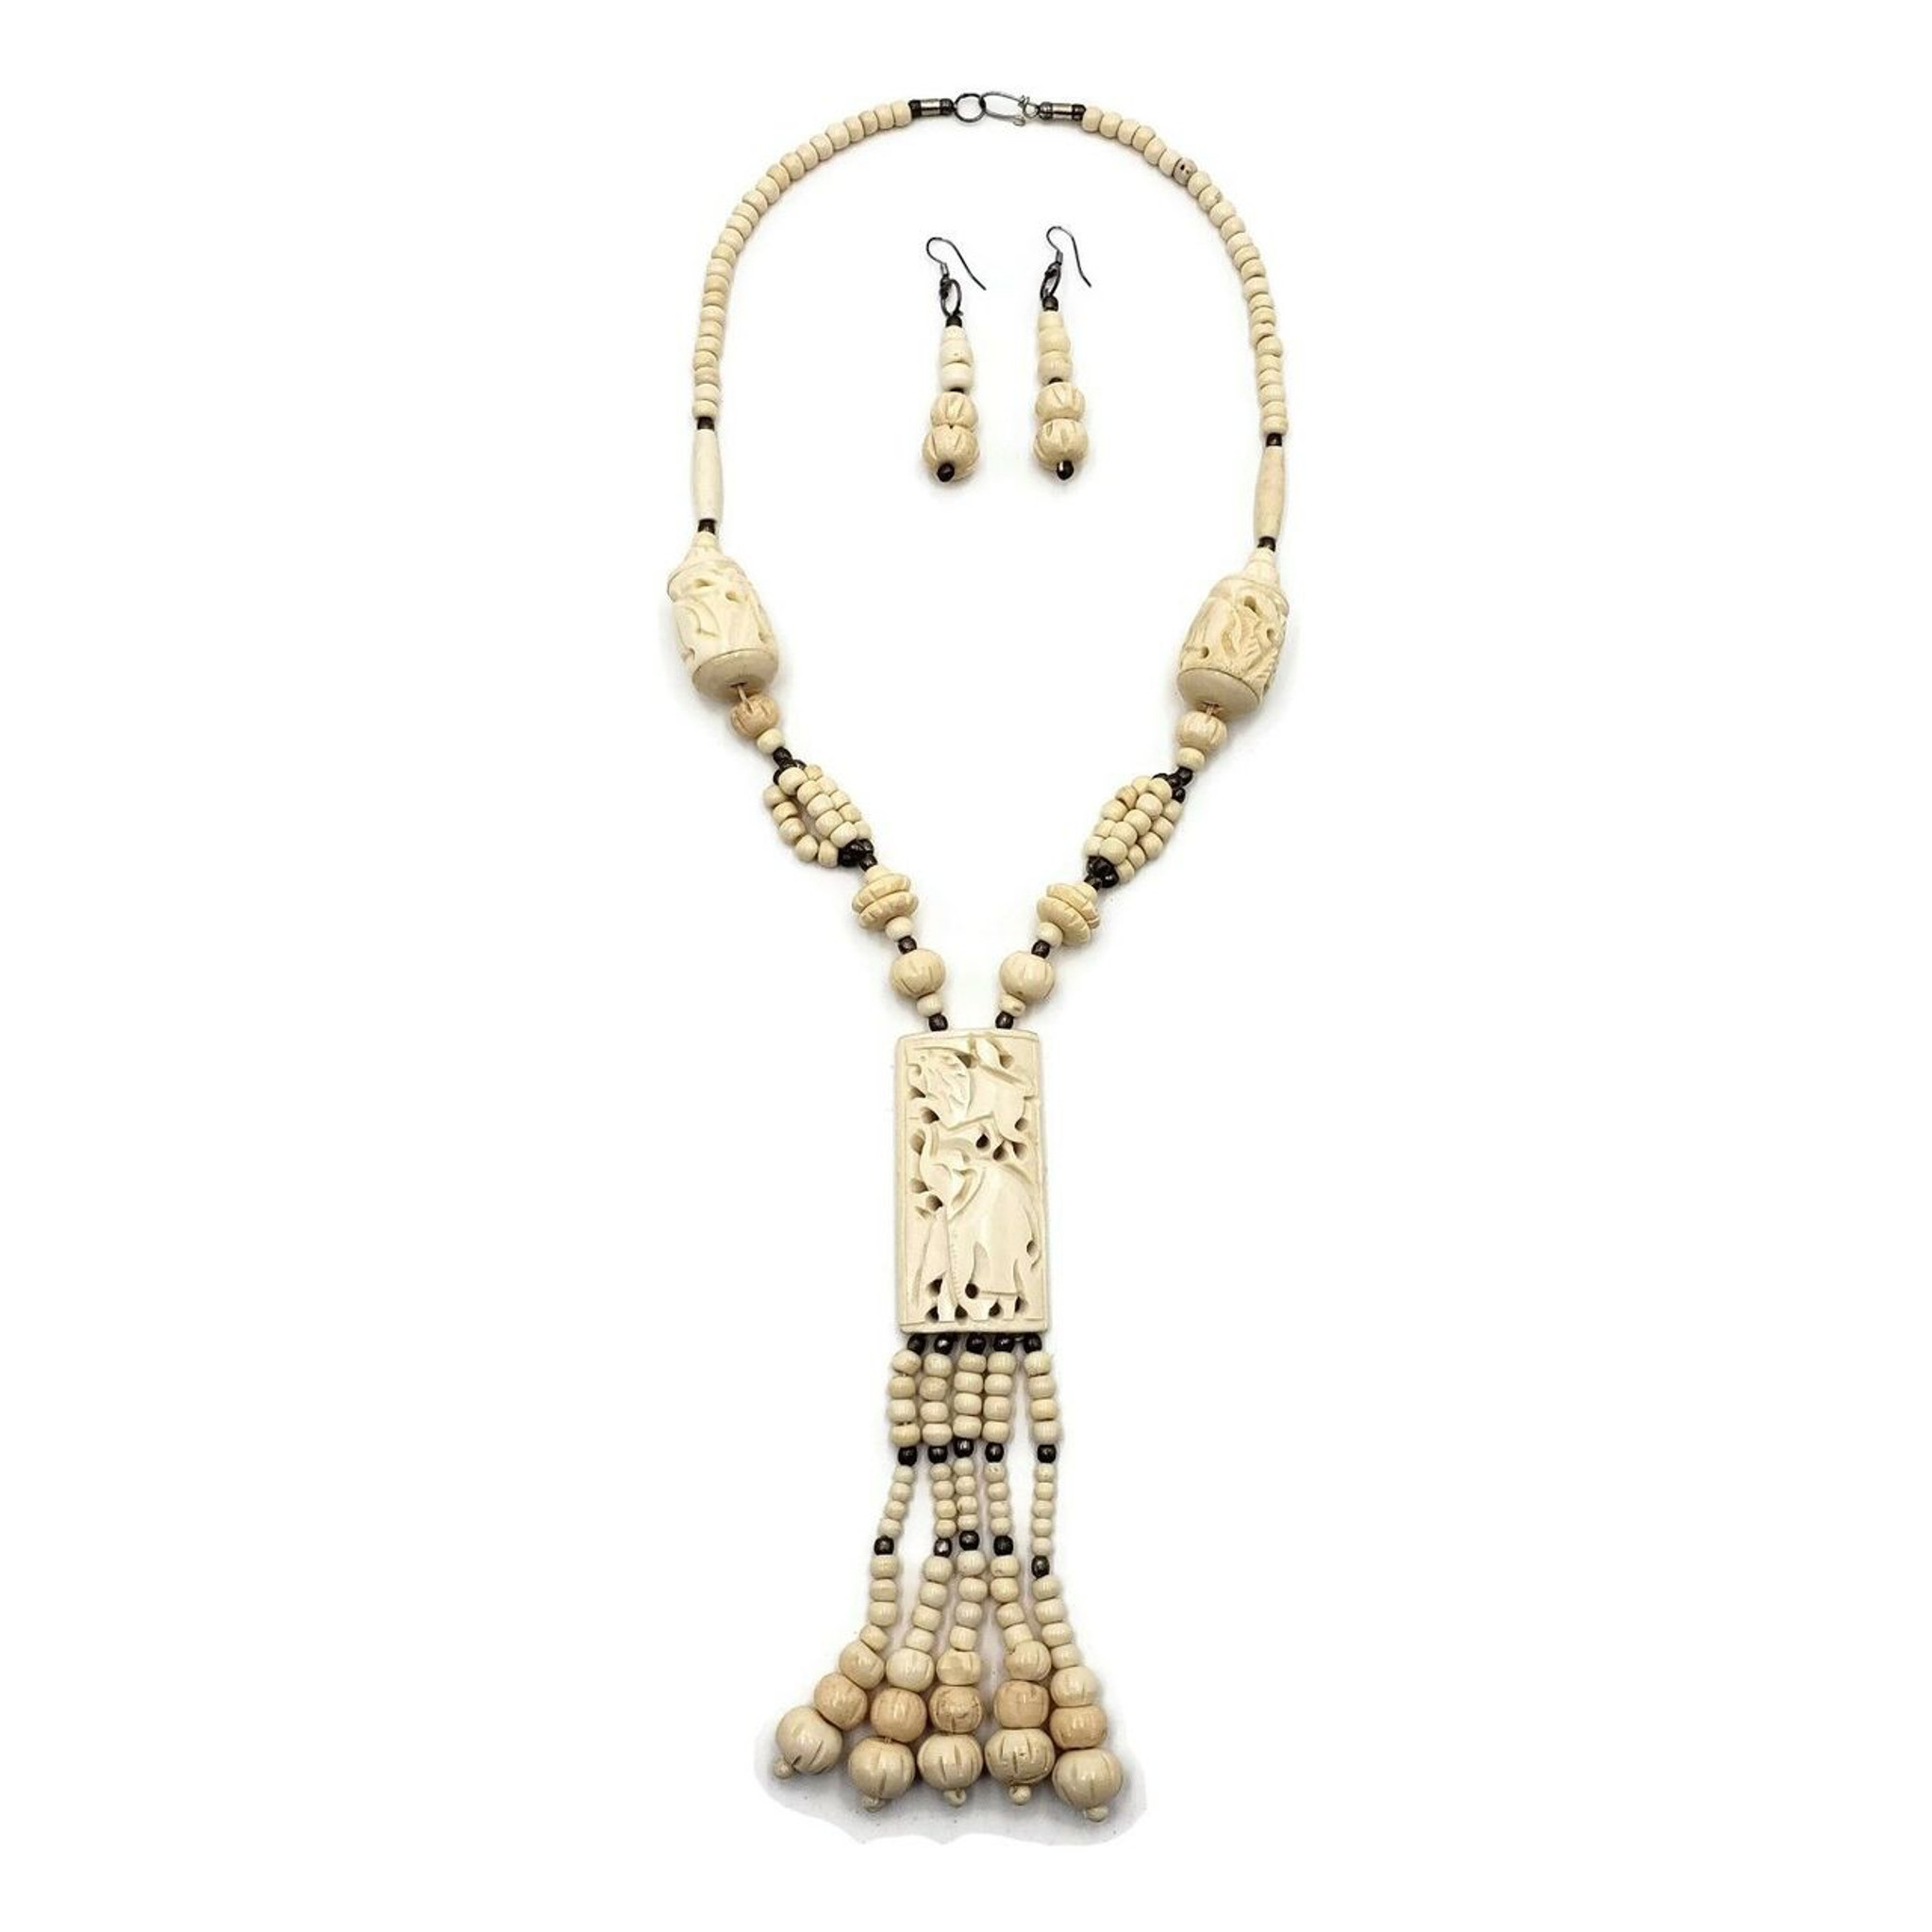 Lambu Bone Necklace with Carved Elephant Pendant